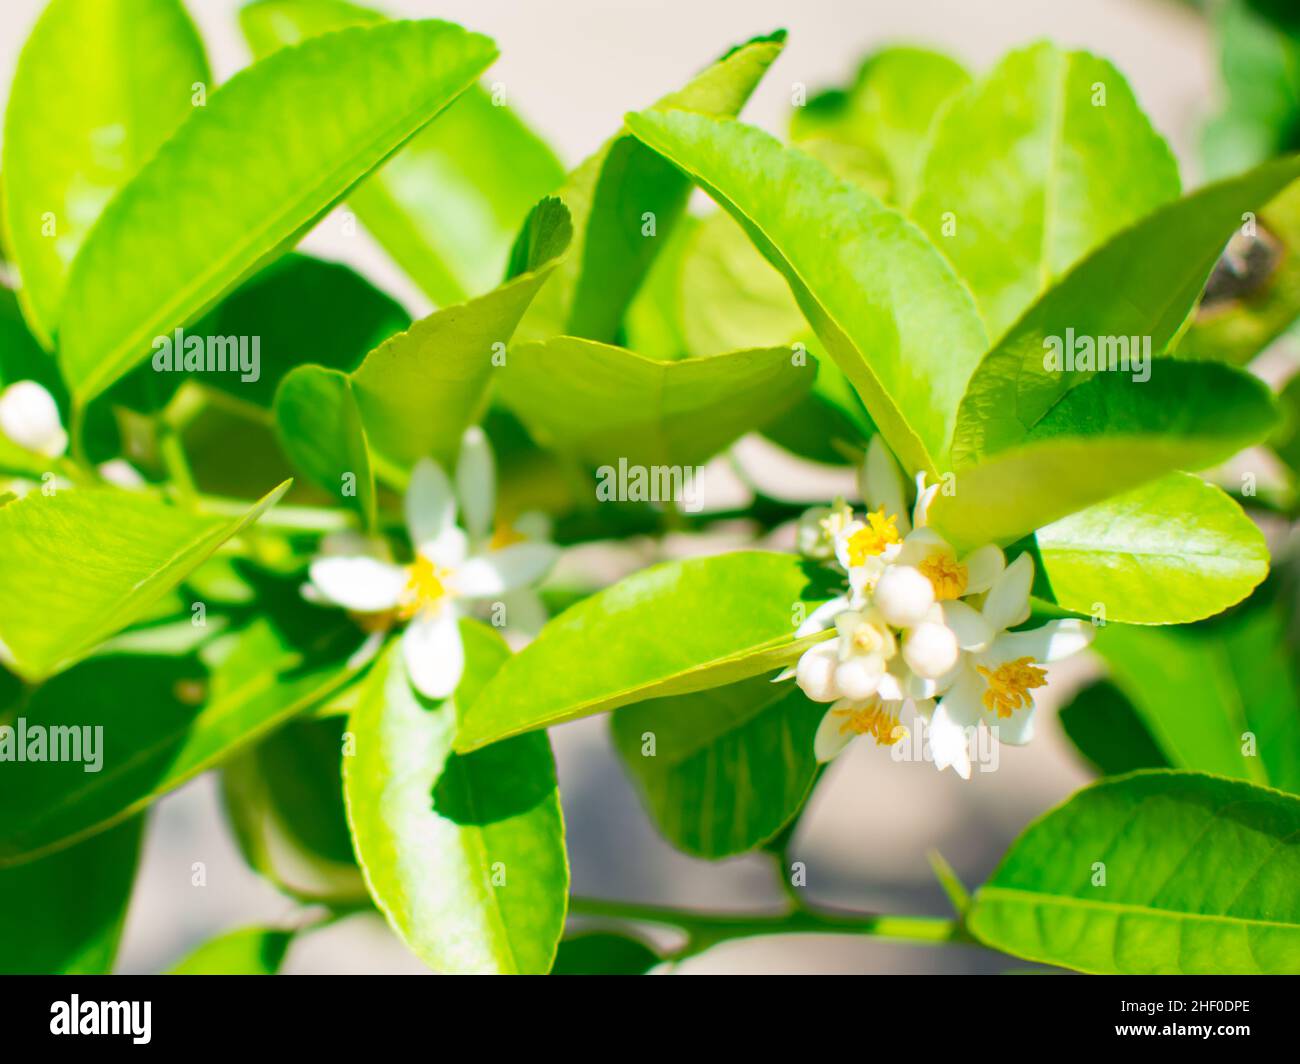 Lindenblüte oder Lindenblüte auf dem Baum (Citrus aurantifolia). Sie sind weiß und gelb, Blätter sind grün.Bild im unscharfen Hintergrund Stockfoto